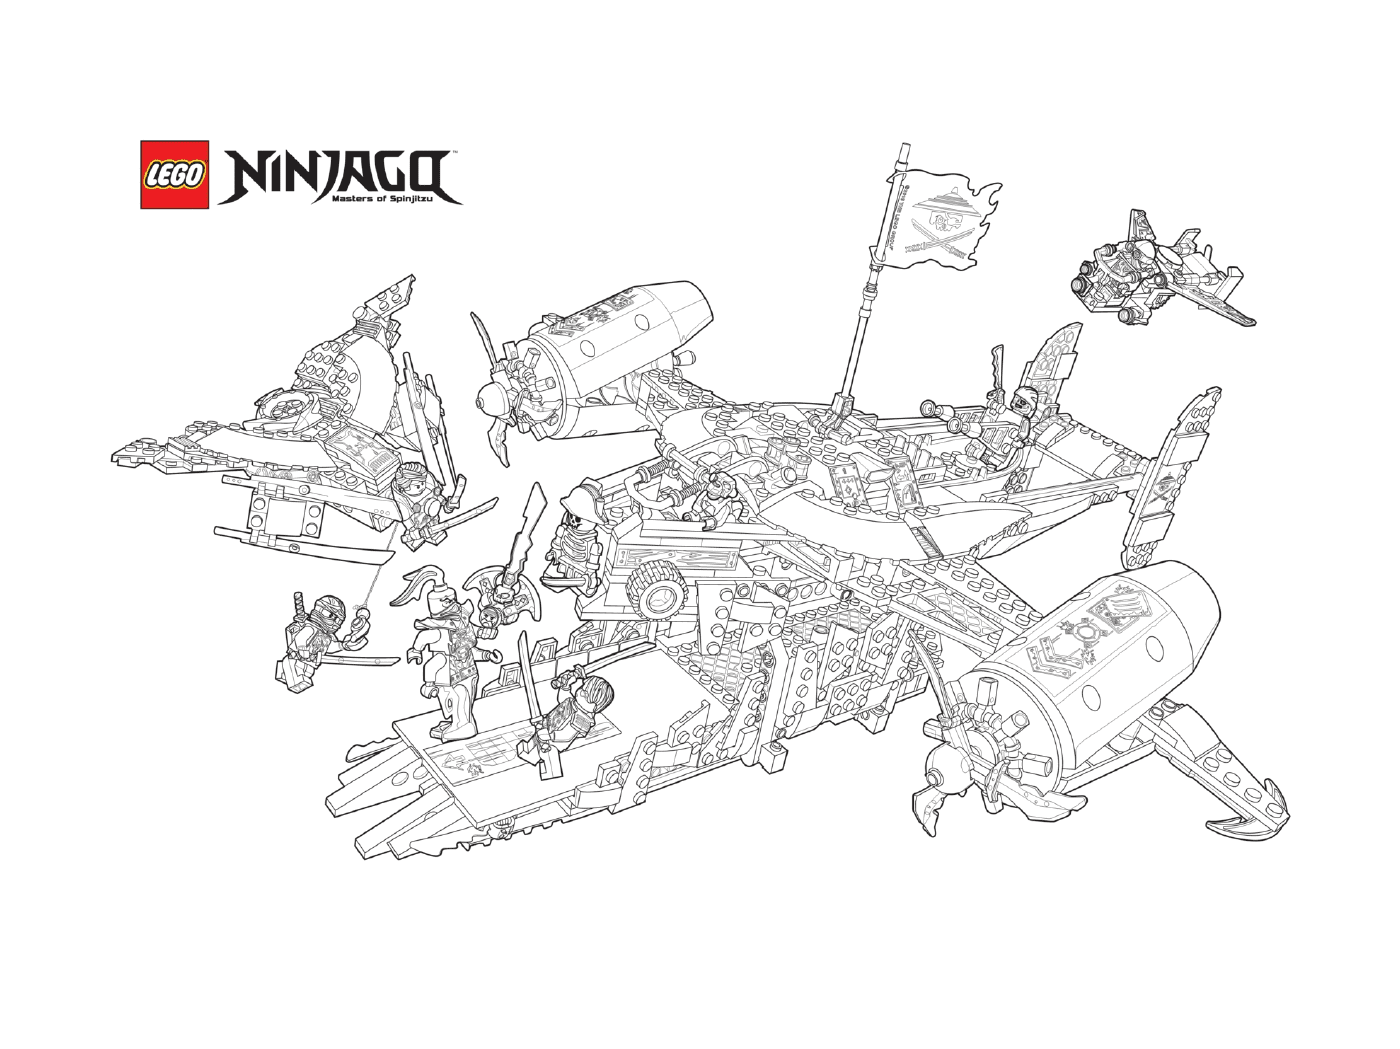  Ninjago combat aircraft ships 